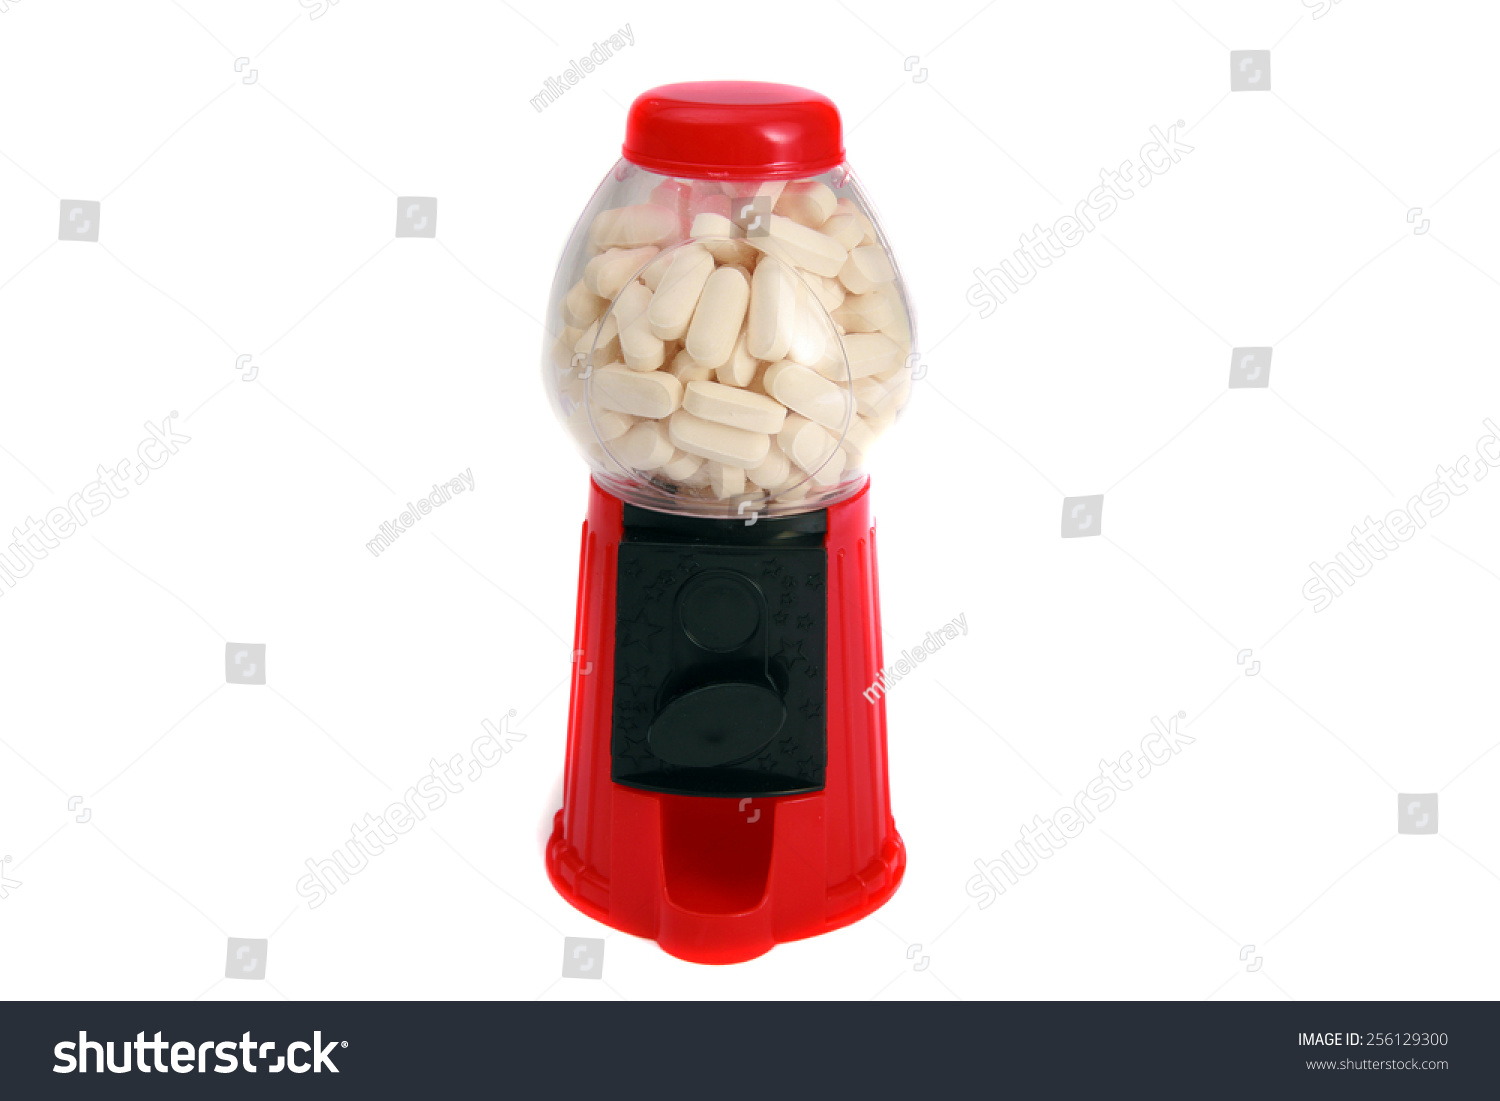 一个玩具胶球机充满白色药片和药物。代表危险